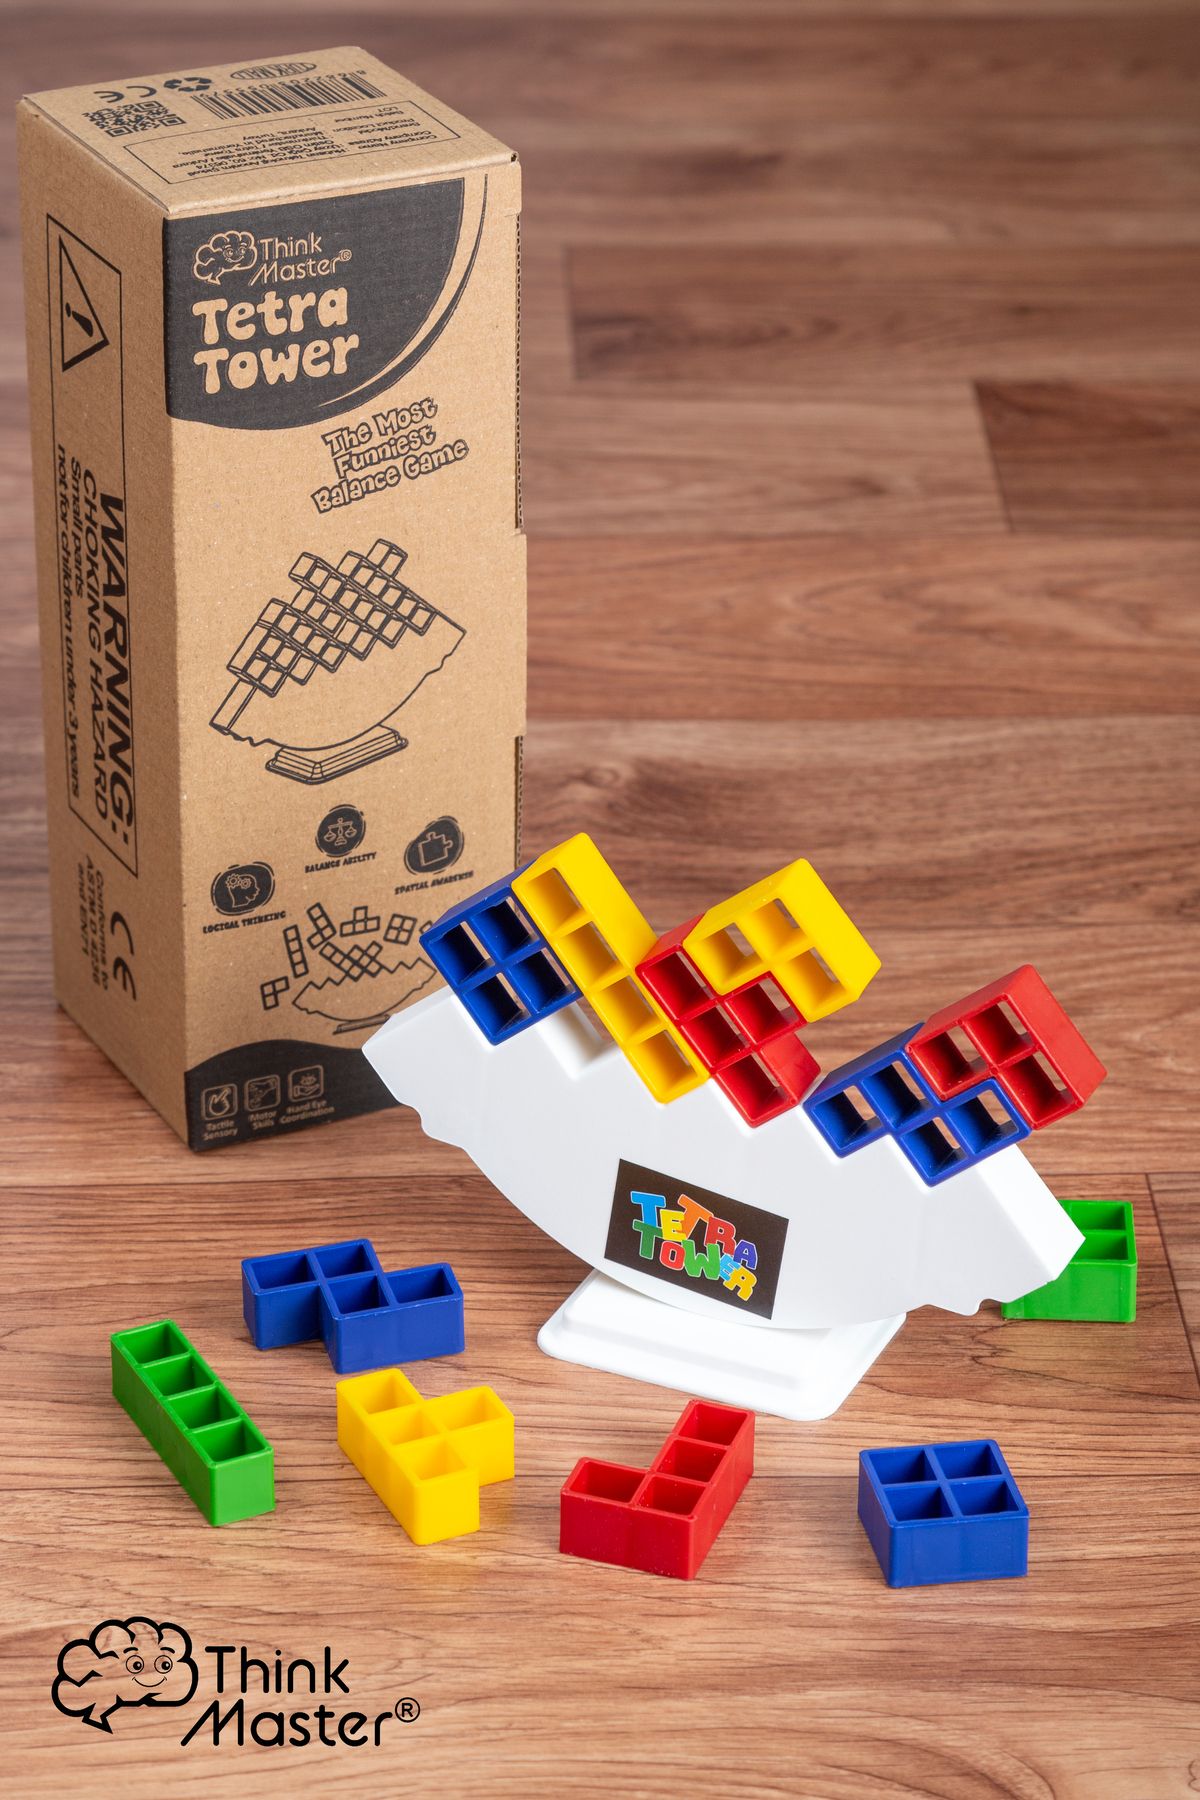 ThinkMaster Tetra Kule Denge Oyuncağı Eğitici Kutu Oyuncak Tetris Kule Tetra Tower